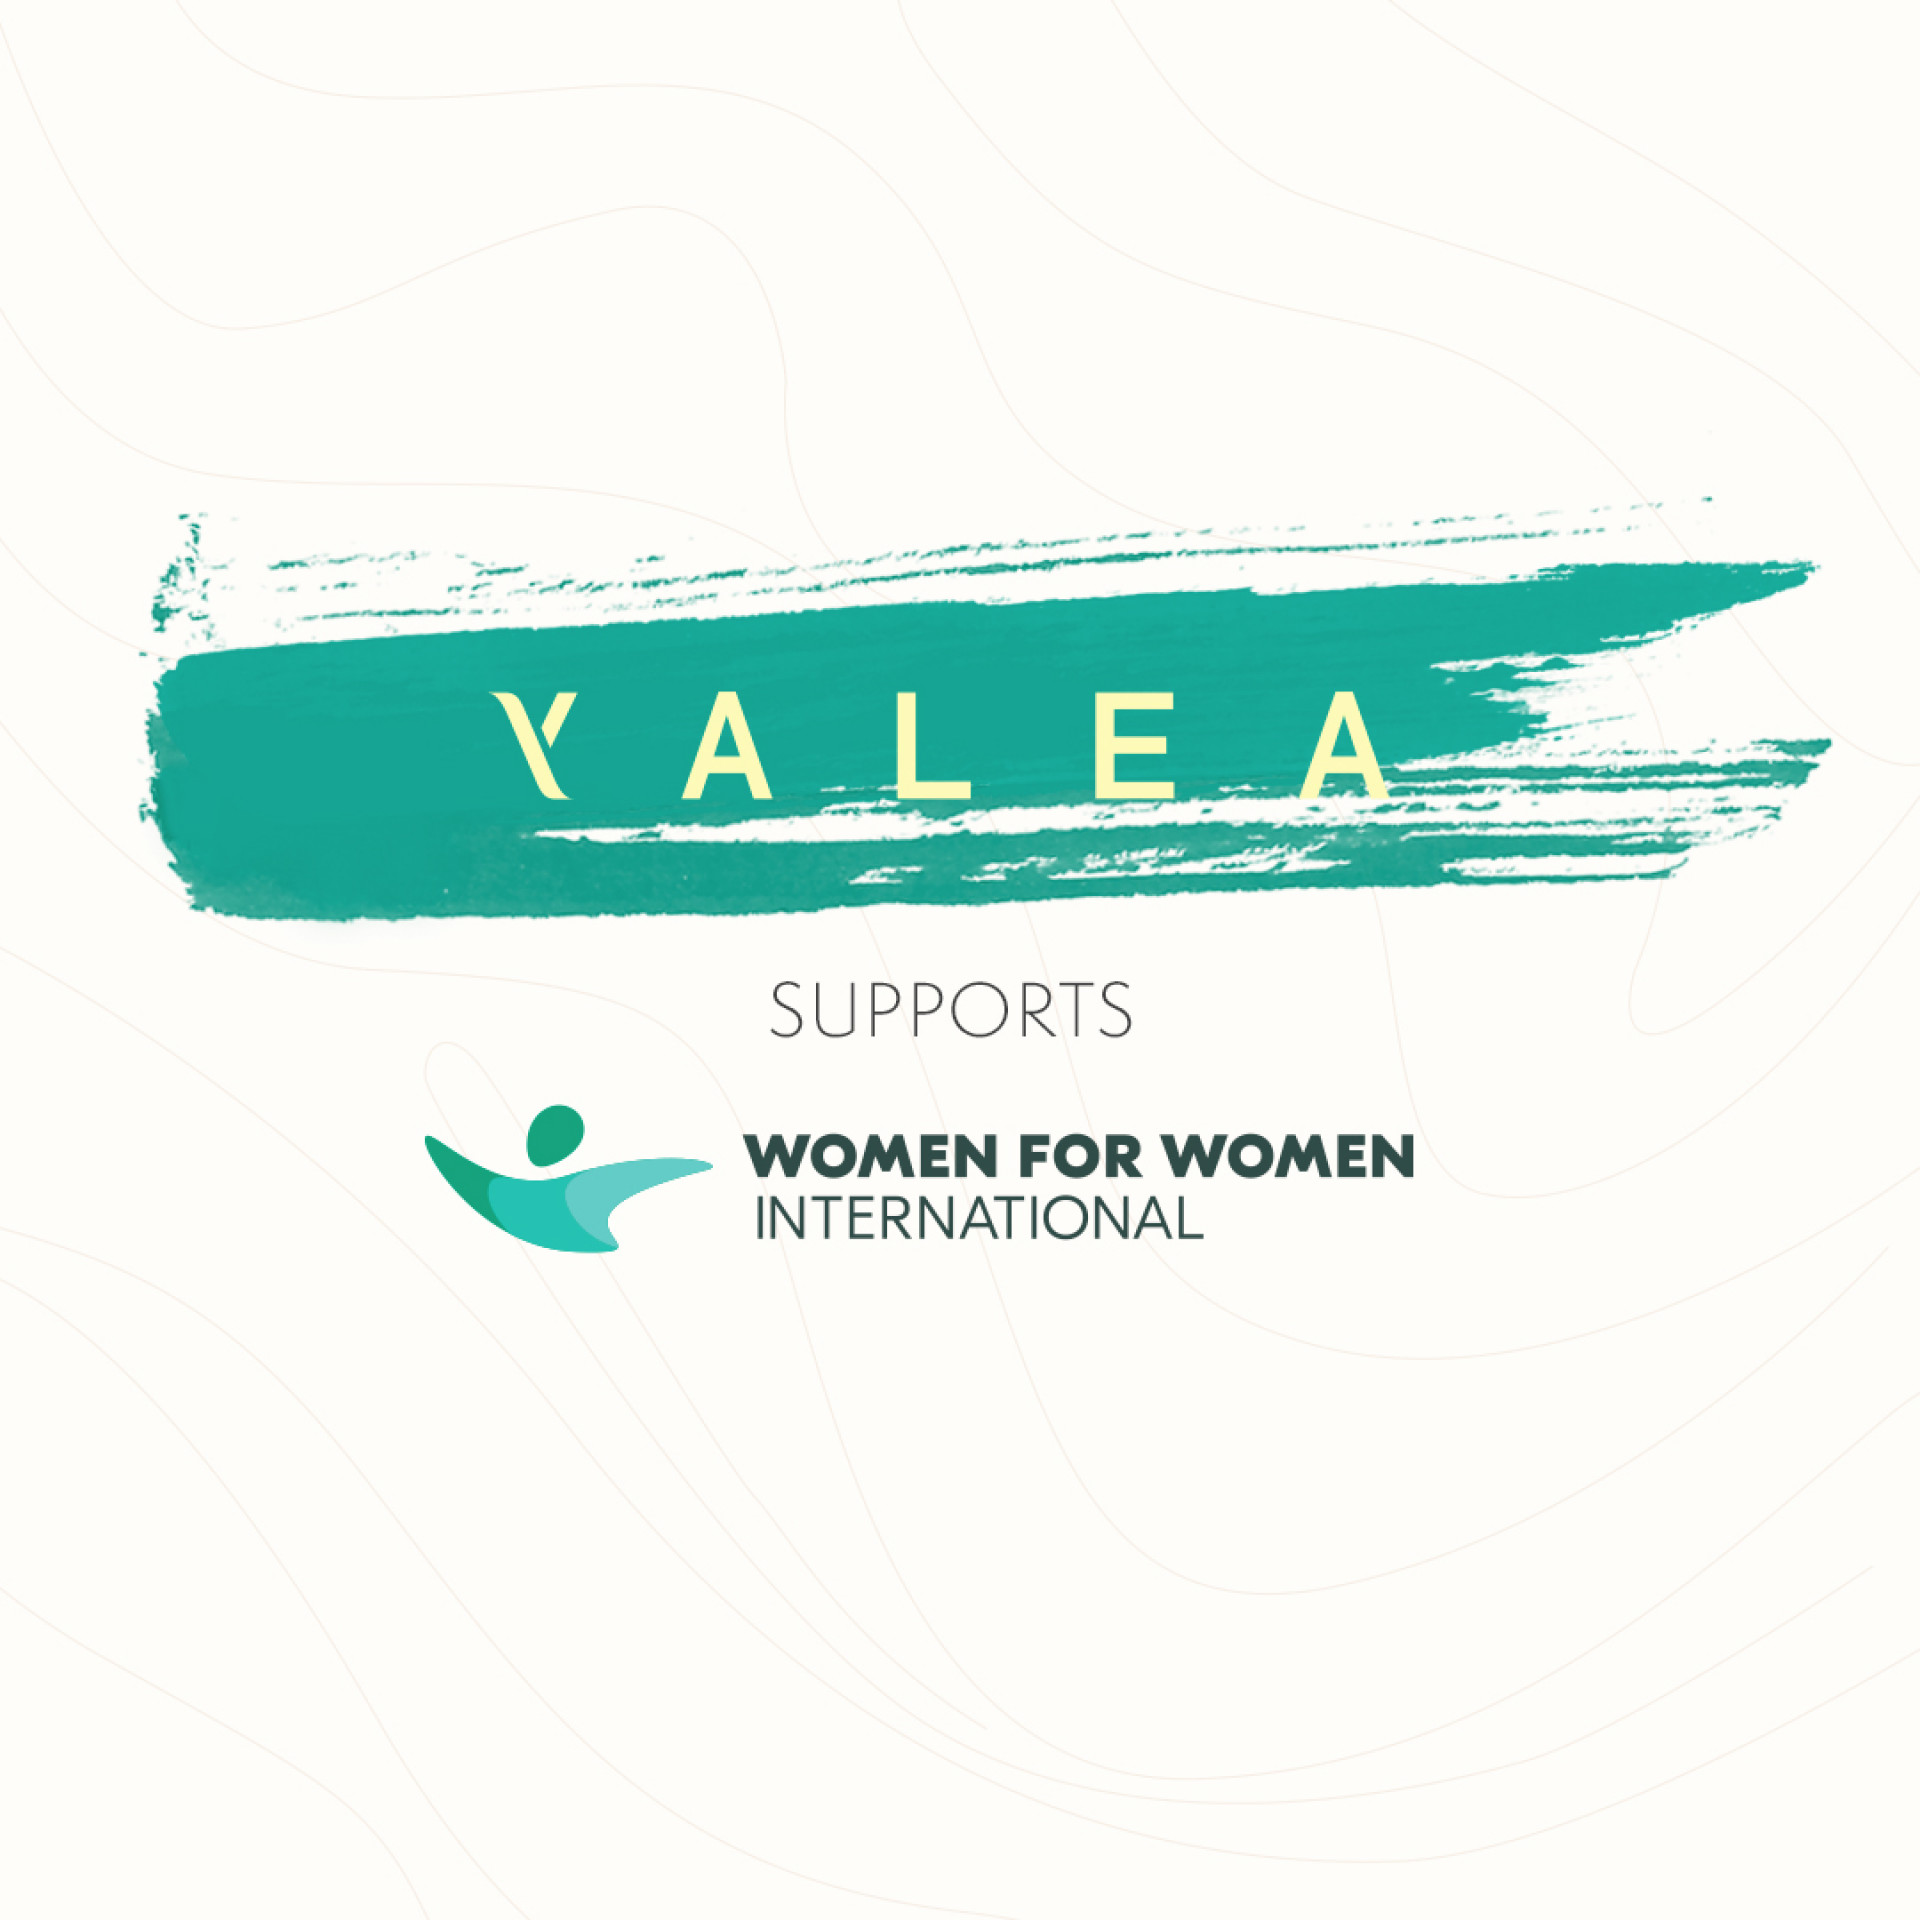  YALEA ESPOUSES  WOMEN FOR WOMEN INTERNATIONAL’S “STRONGER WOMEN, STRONGER NATIONS PROGRAMME”